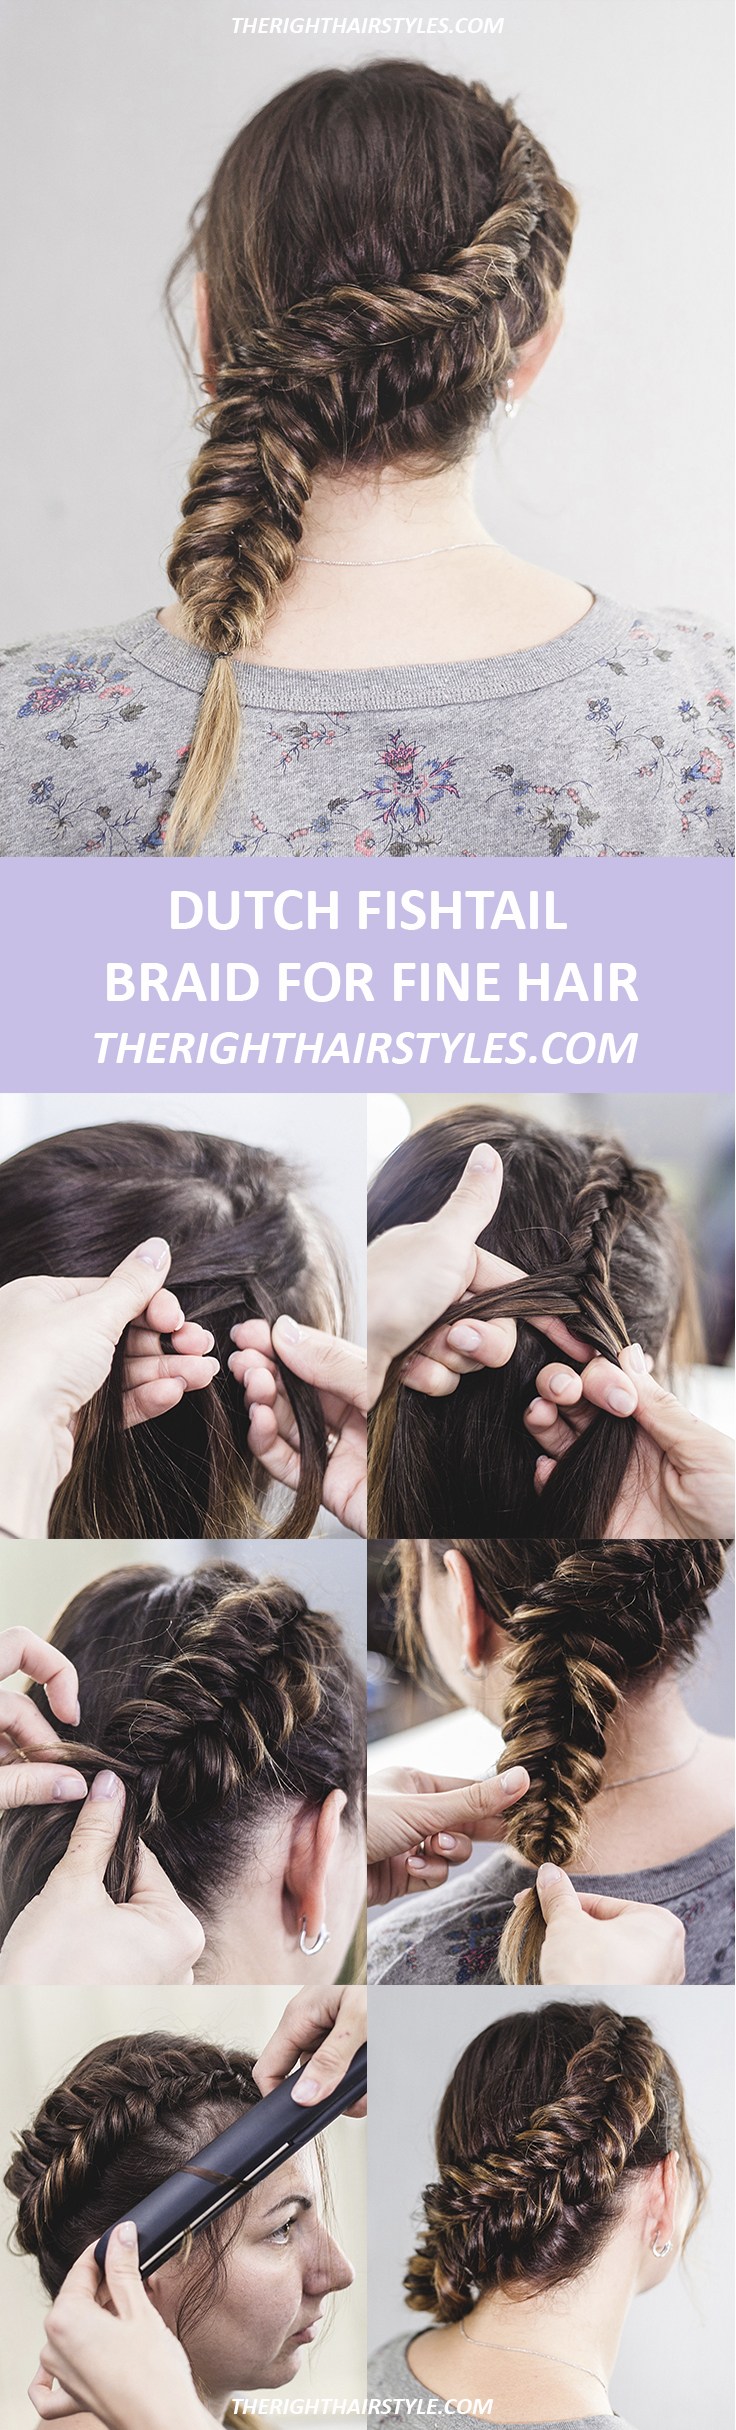 Wie man einen Dutch Fishtail Braid in 5 einfachen Schritten macht  